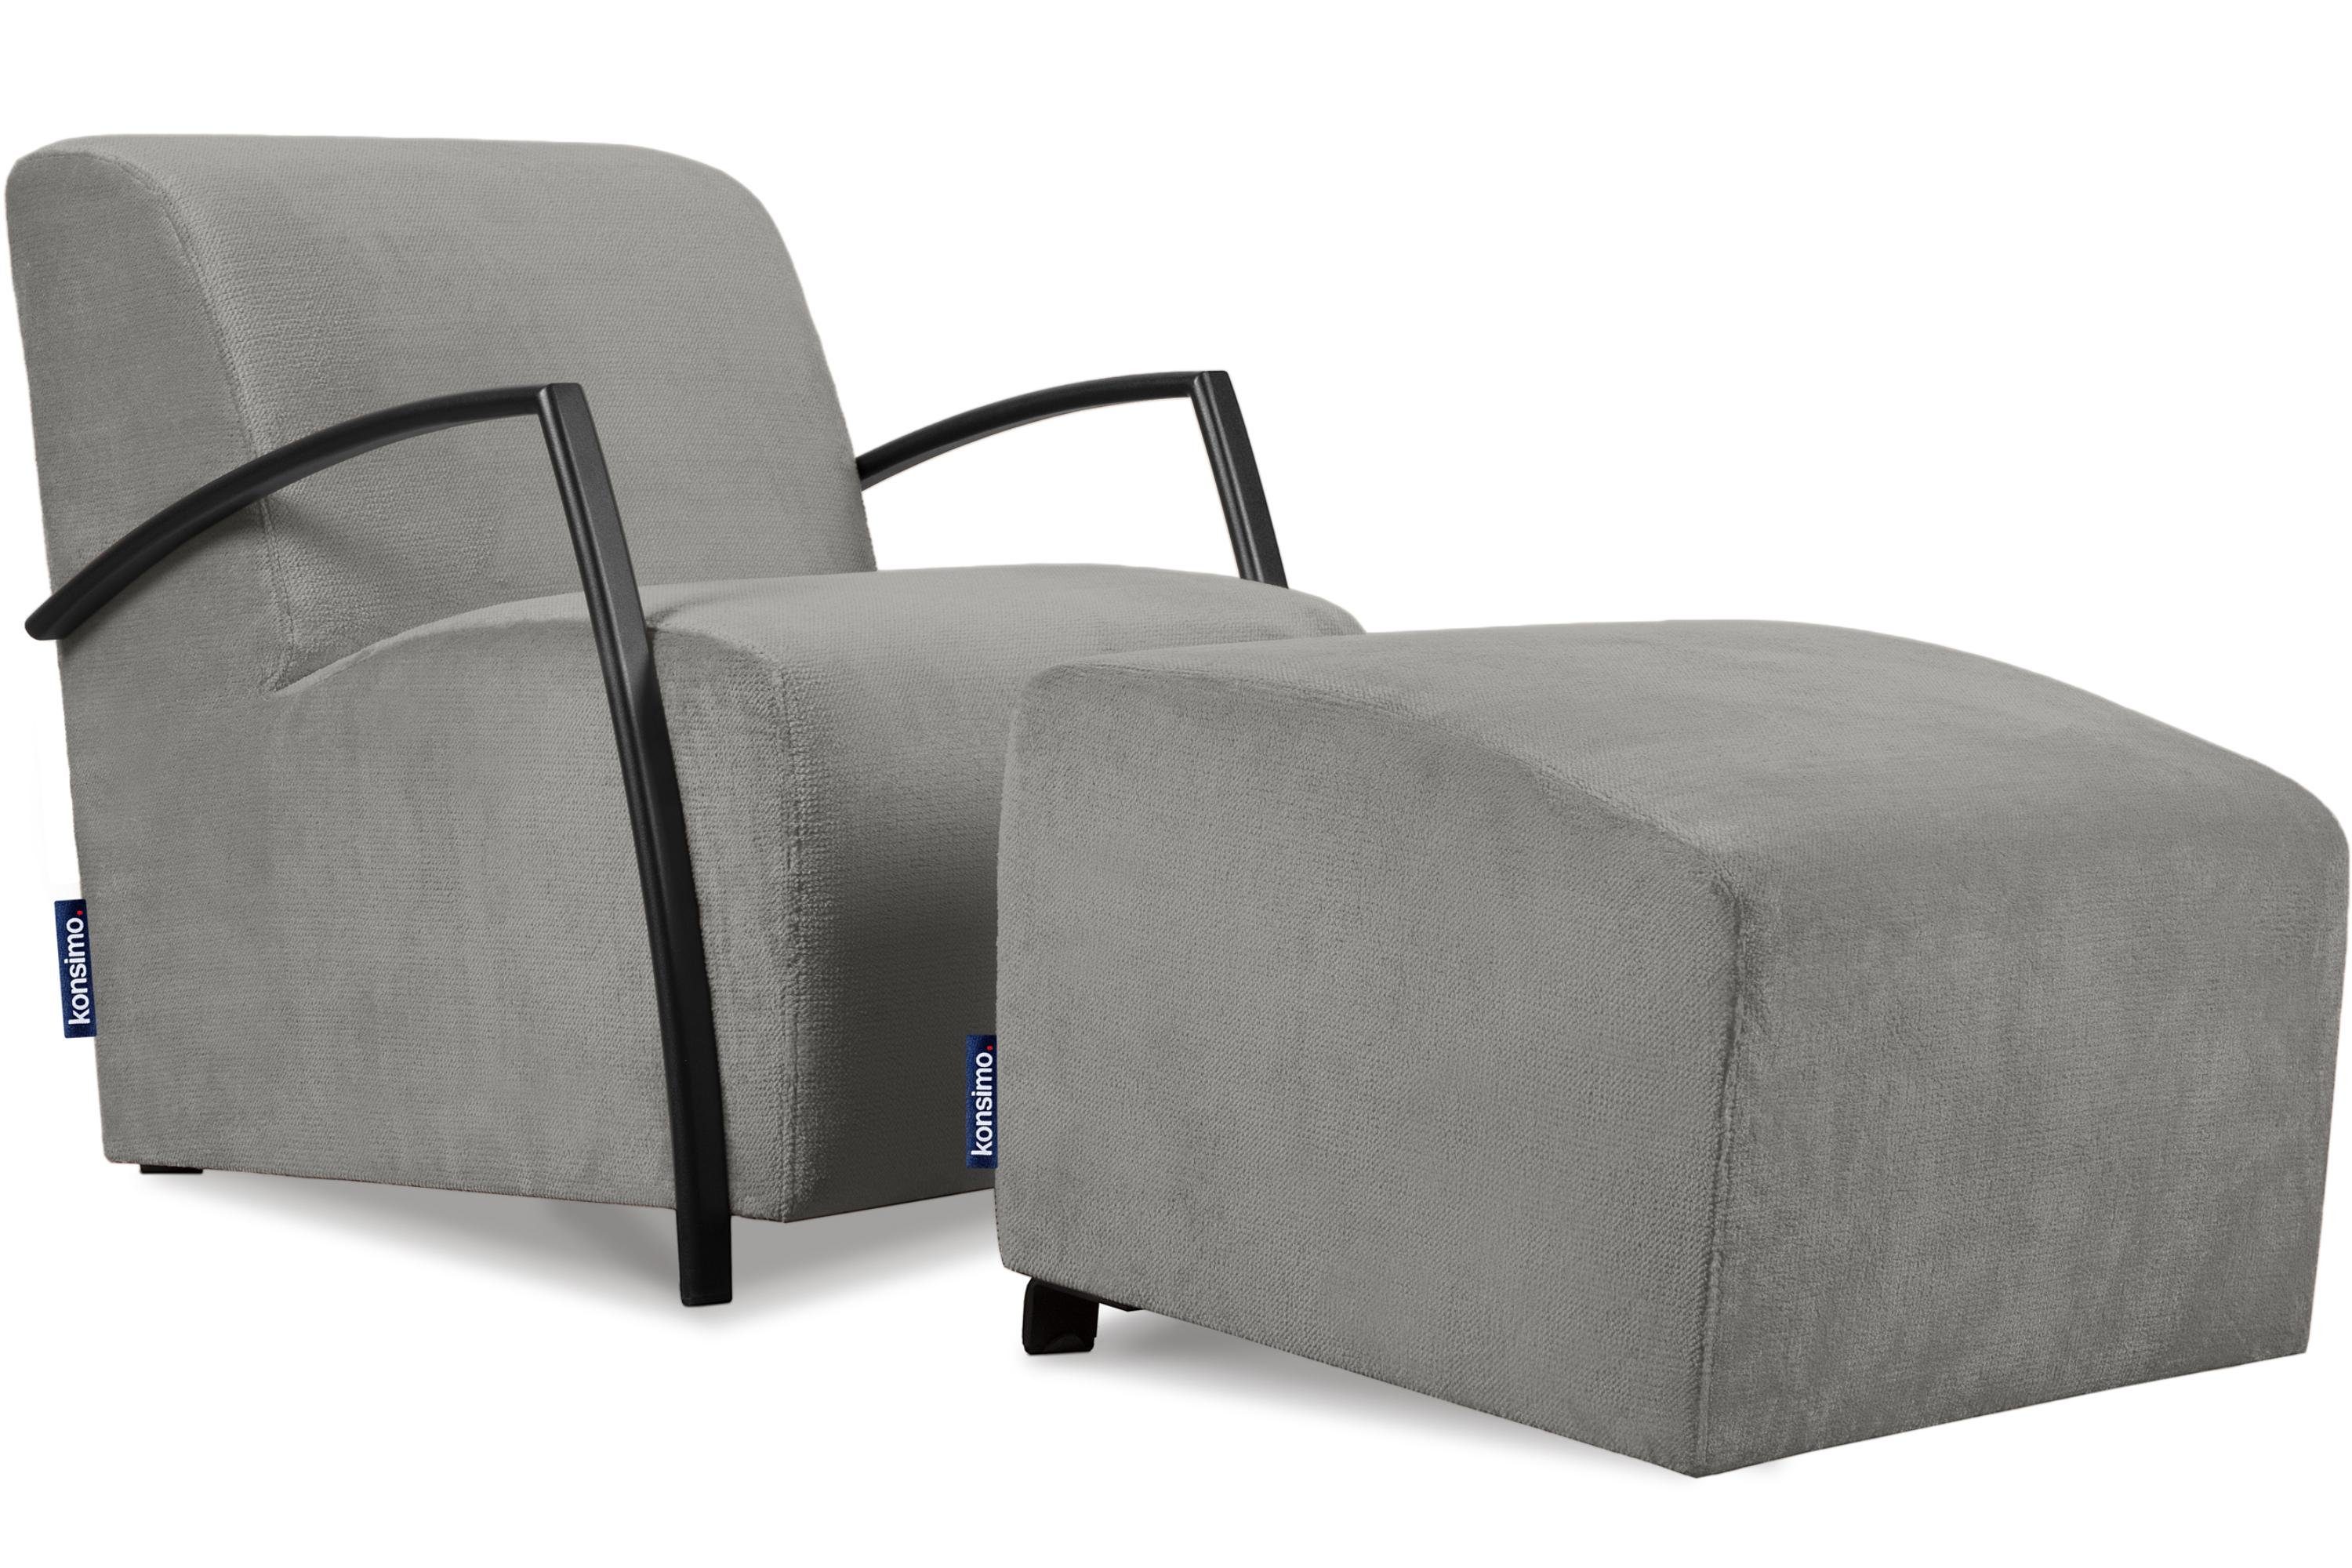 Konsimo Cocktailsessel CARO Sessel mit Hocker (Relaxsessel mit Hocker), mit gewellter Feder im Sitz, ergonomische Form für bequemes Sitzen grau | grau